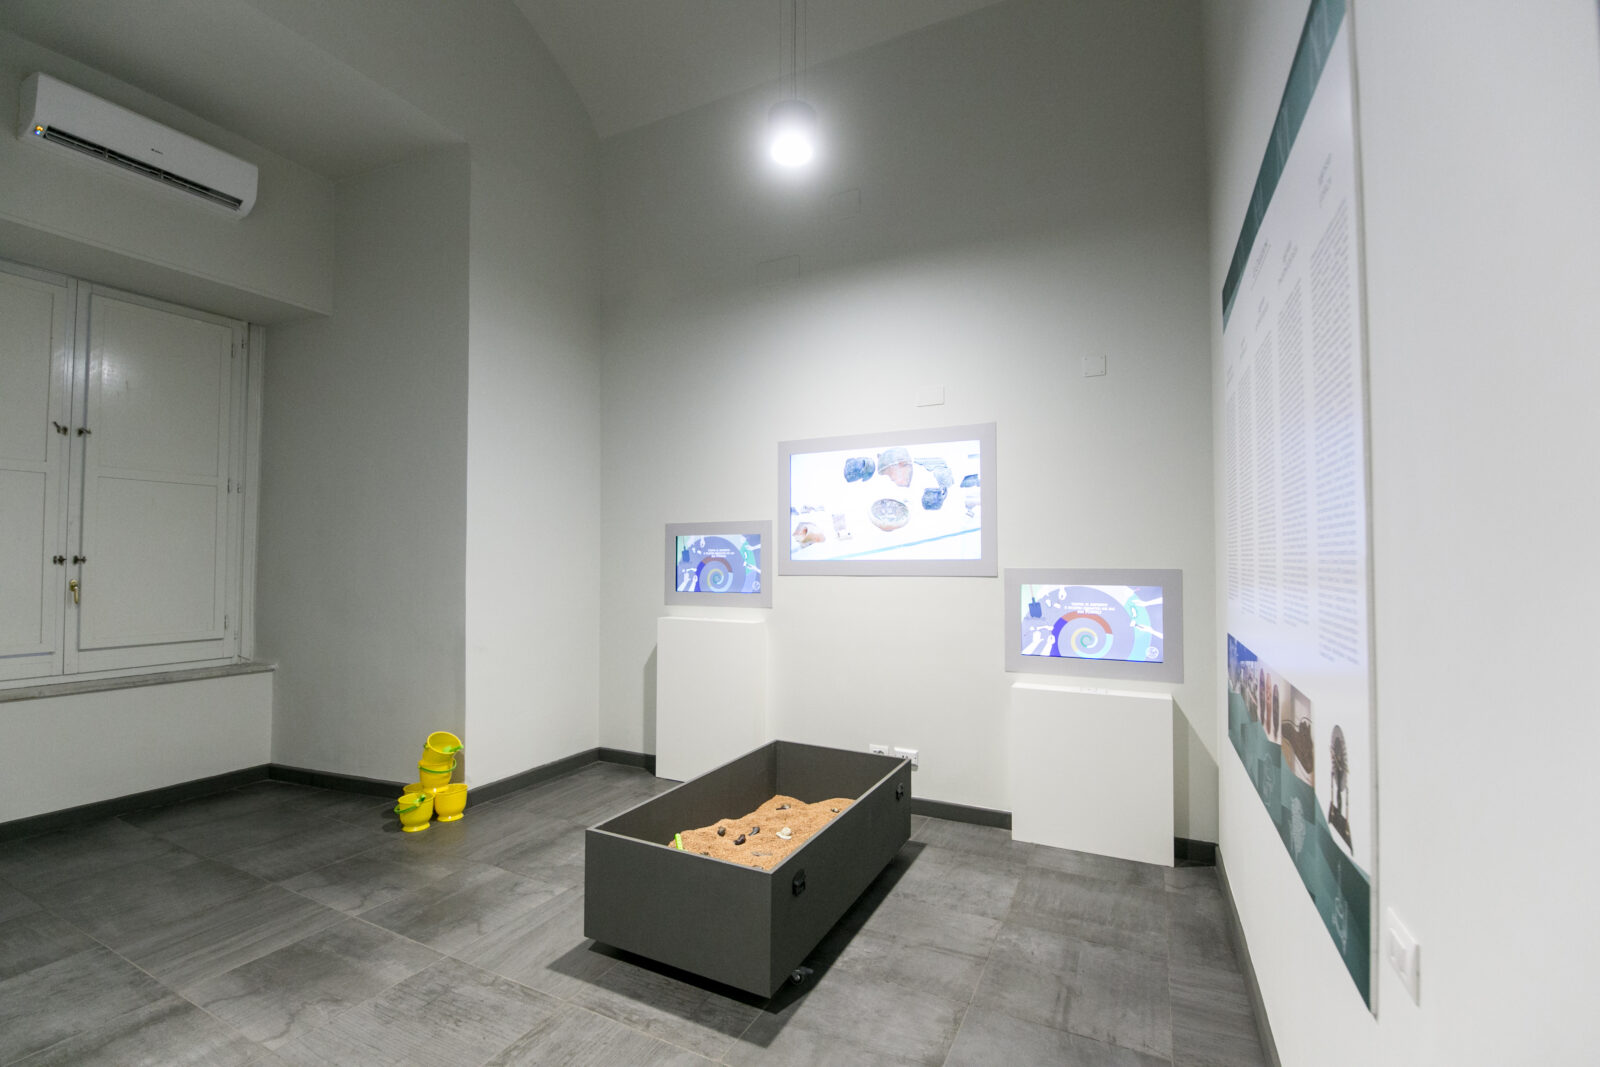 Sala del Polo Museale dell’Università Federico II di Napoli, con al centro una vasca di sabbia, realizzata da ett per il gioco interattivo Scava e Impara